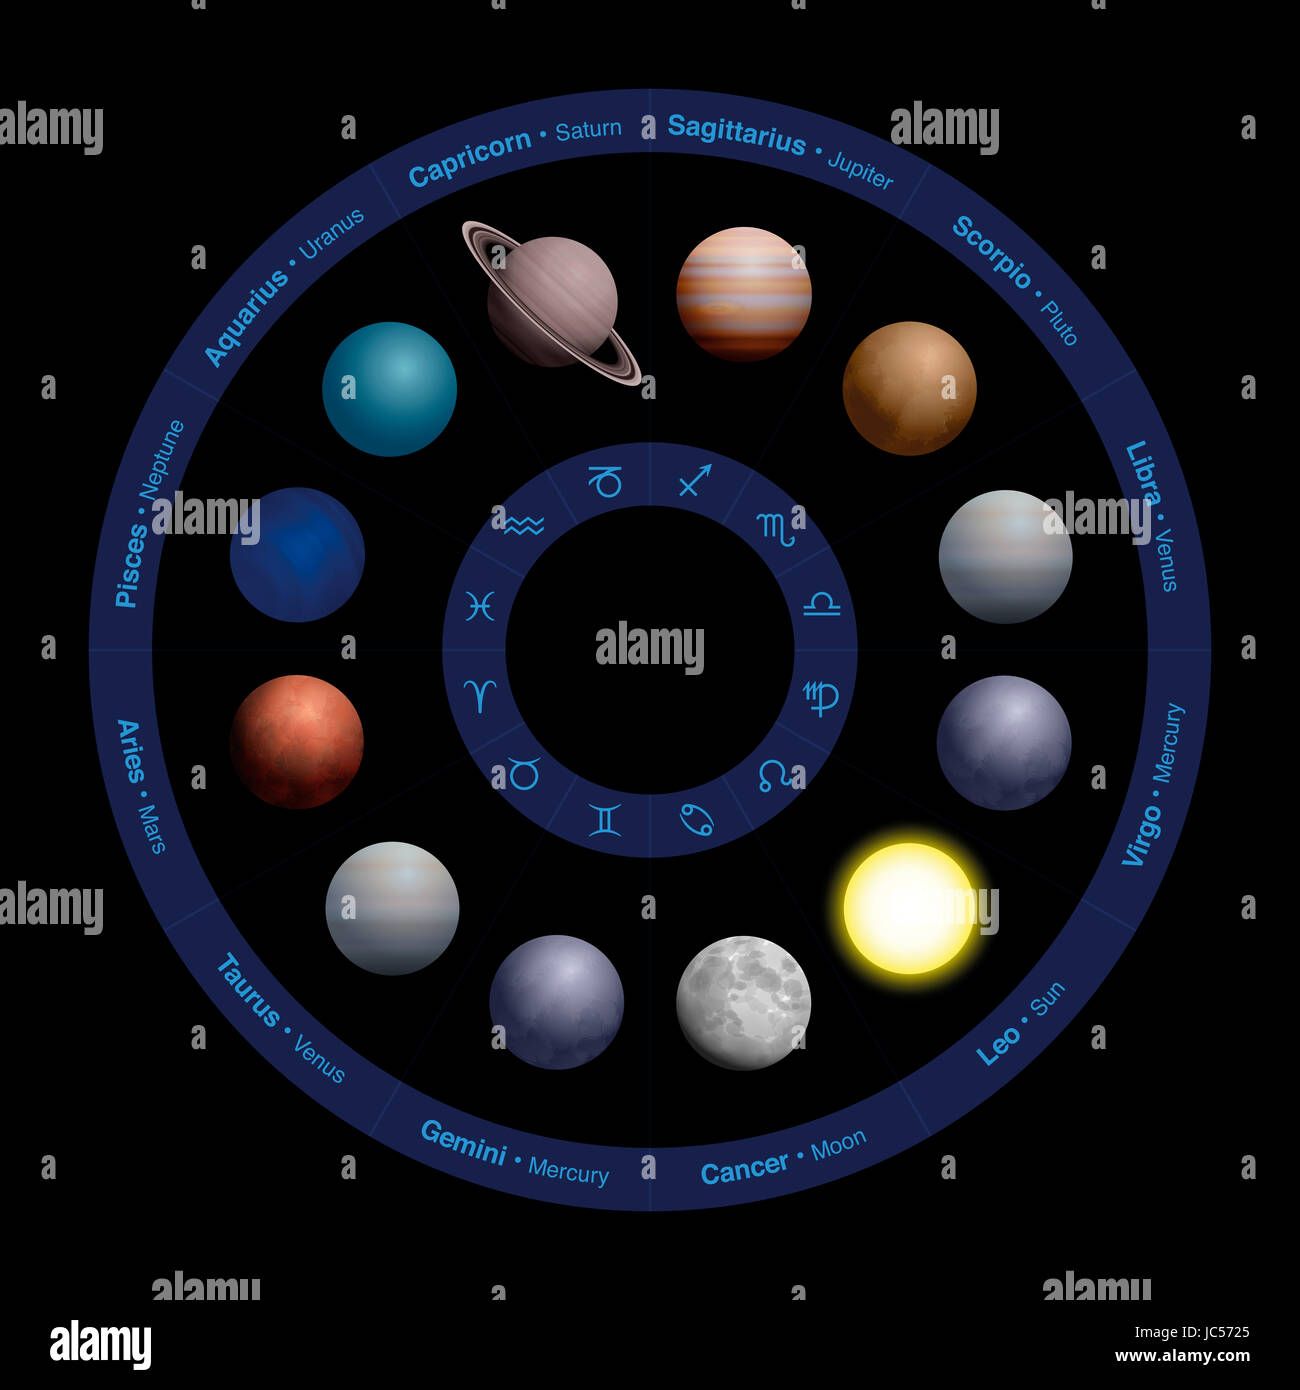 Planètes de l'astrologie, design réaliste, dans le cercle du zodiaque - avec des noms dans le cercle extérieur et des symboles dans le cercle intérieur. L'illustration en noir. Banque D'Images